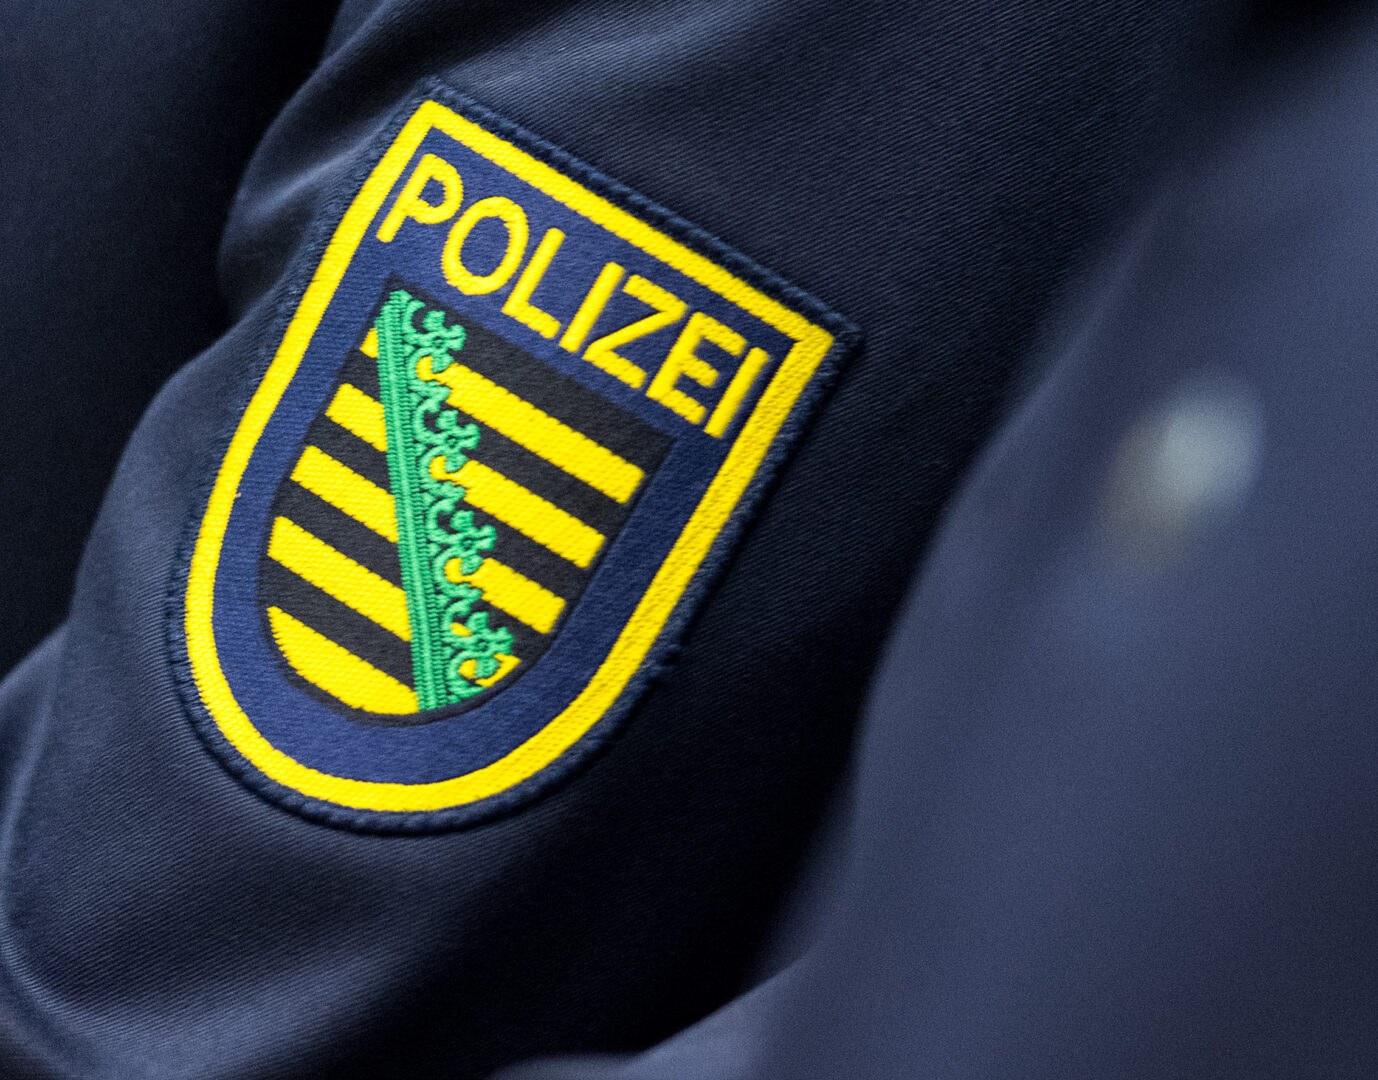 Das Wappen von Sachsen ist auf einer Polizeiuniform angebracht. Nunbgab es einen Angriff auf einen rechtsextremen.